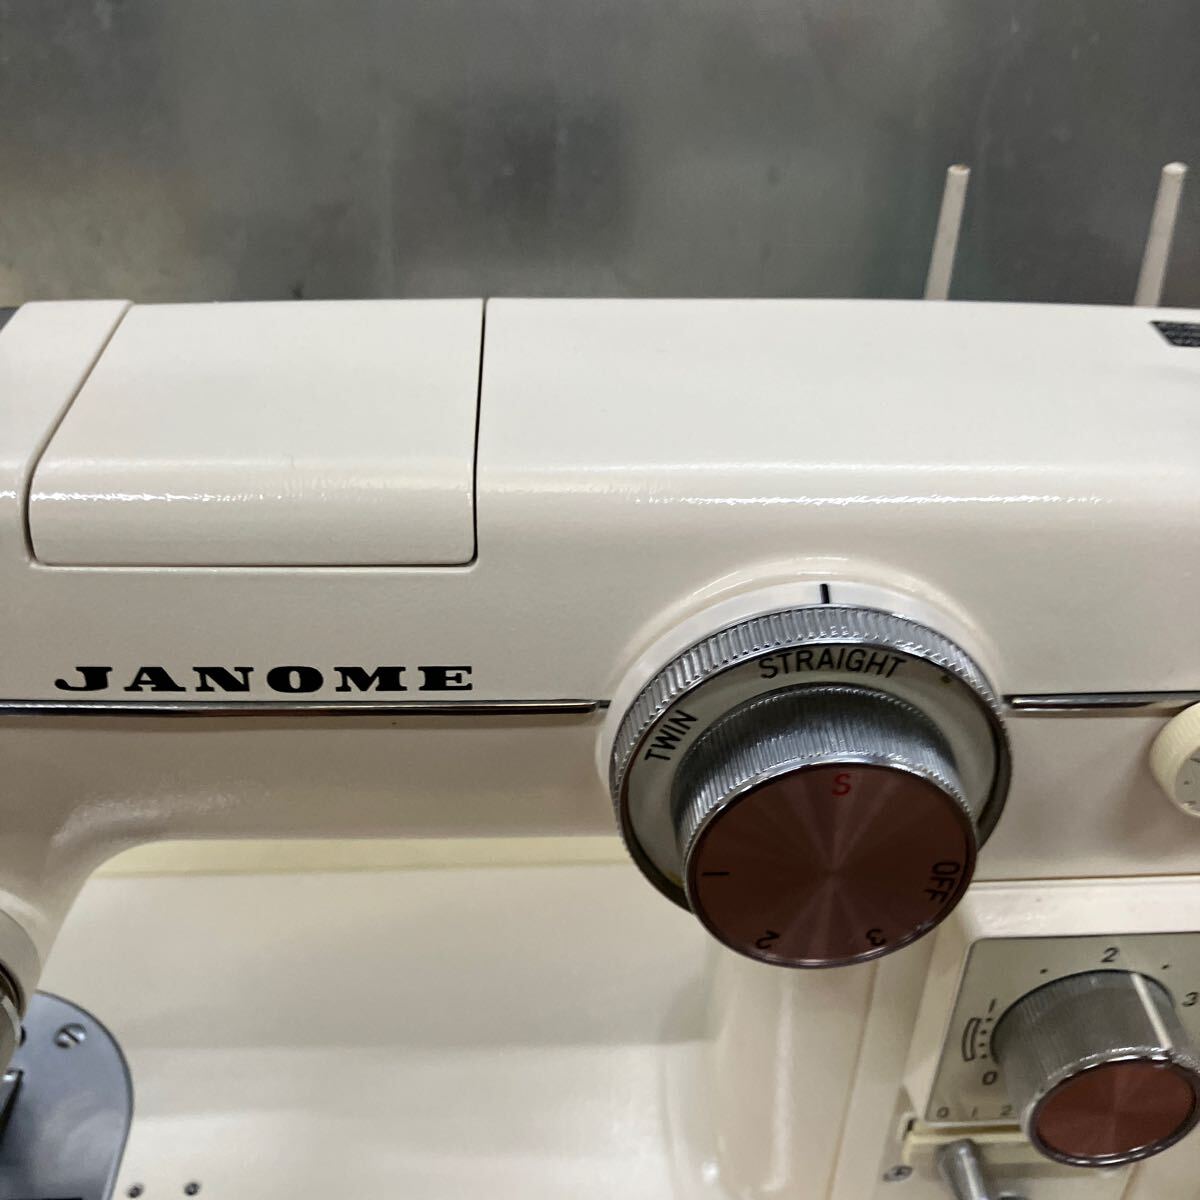 JANOME швейная машина Model 802 Janome модель 802 foot педаль тип рукоделие шитье foot контроллер имеется кейс есть ручная работа Janome швейная машина 